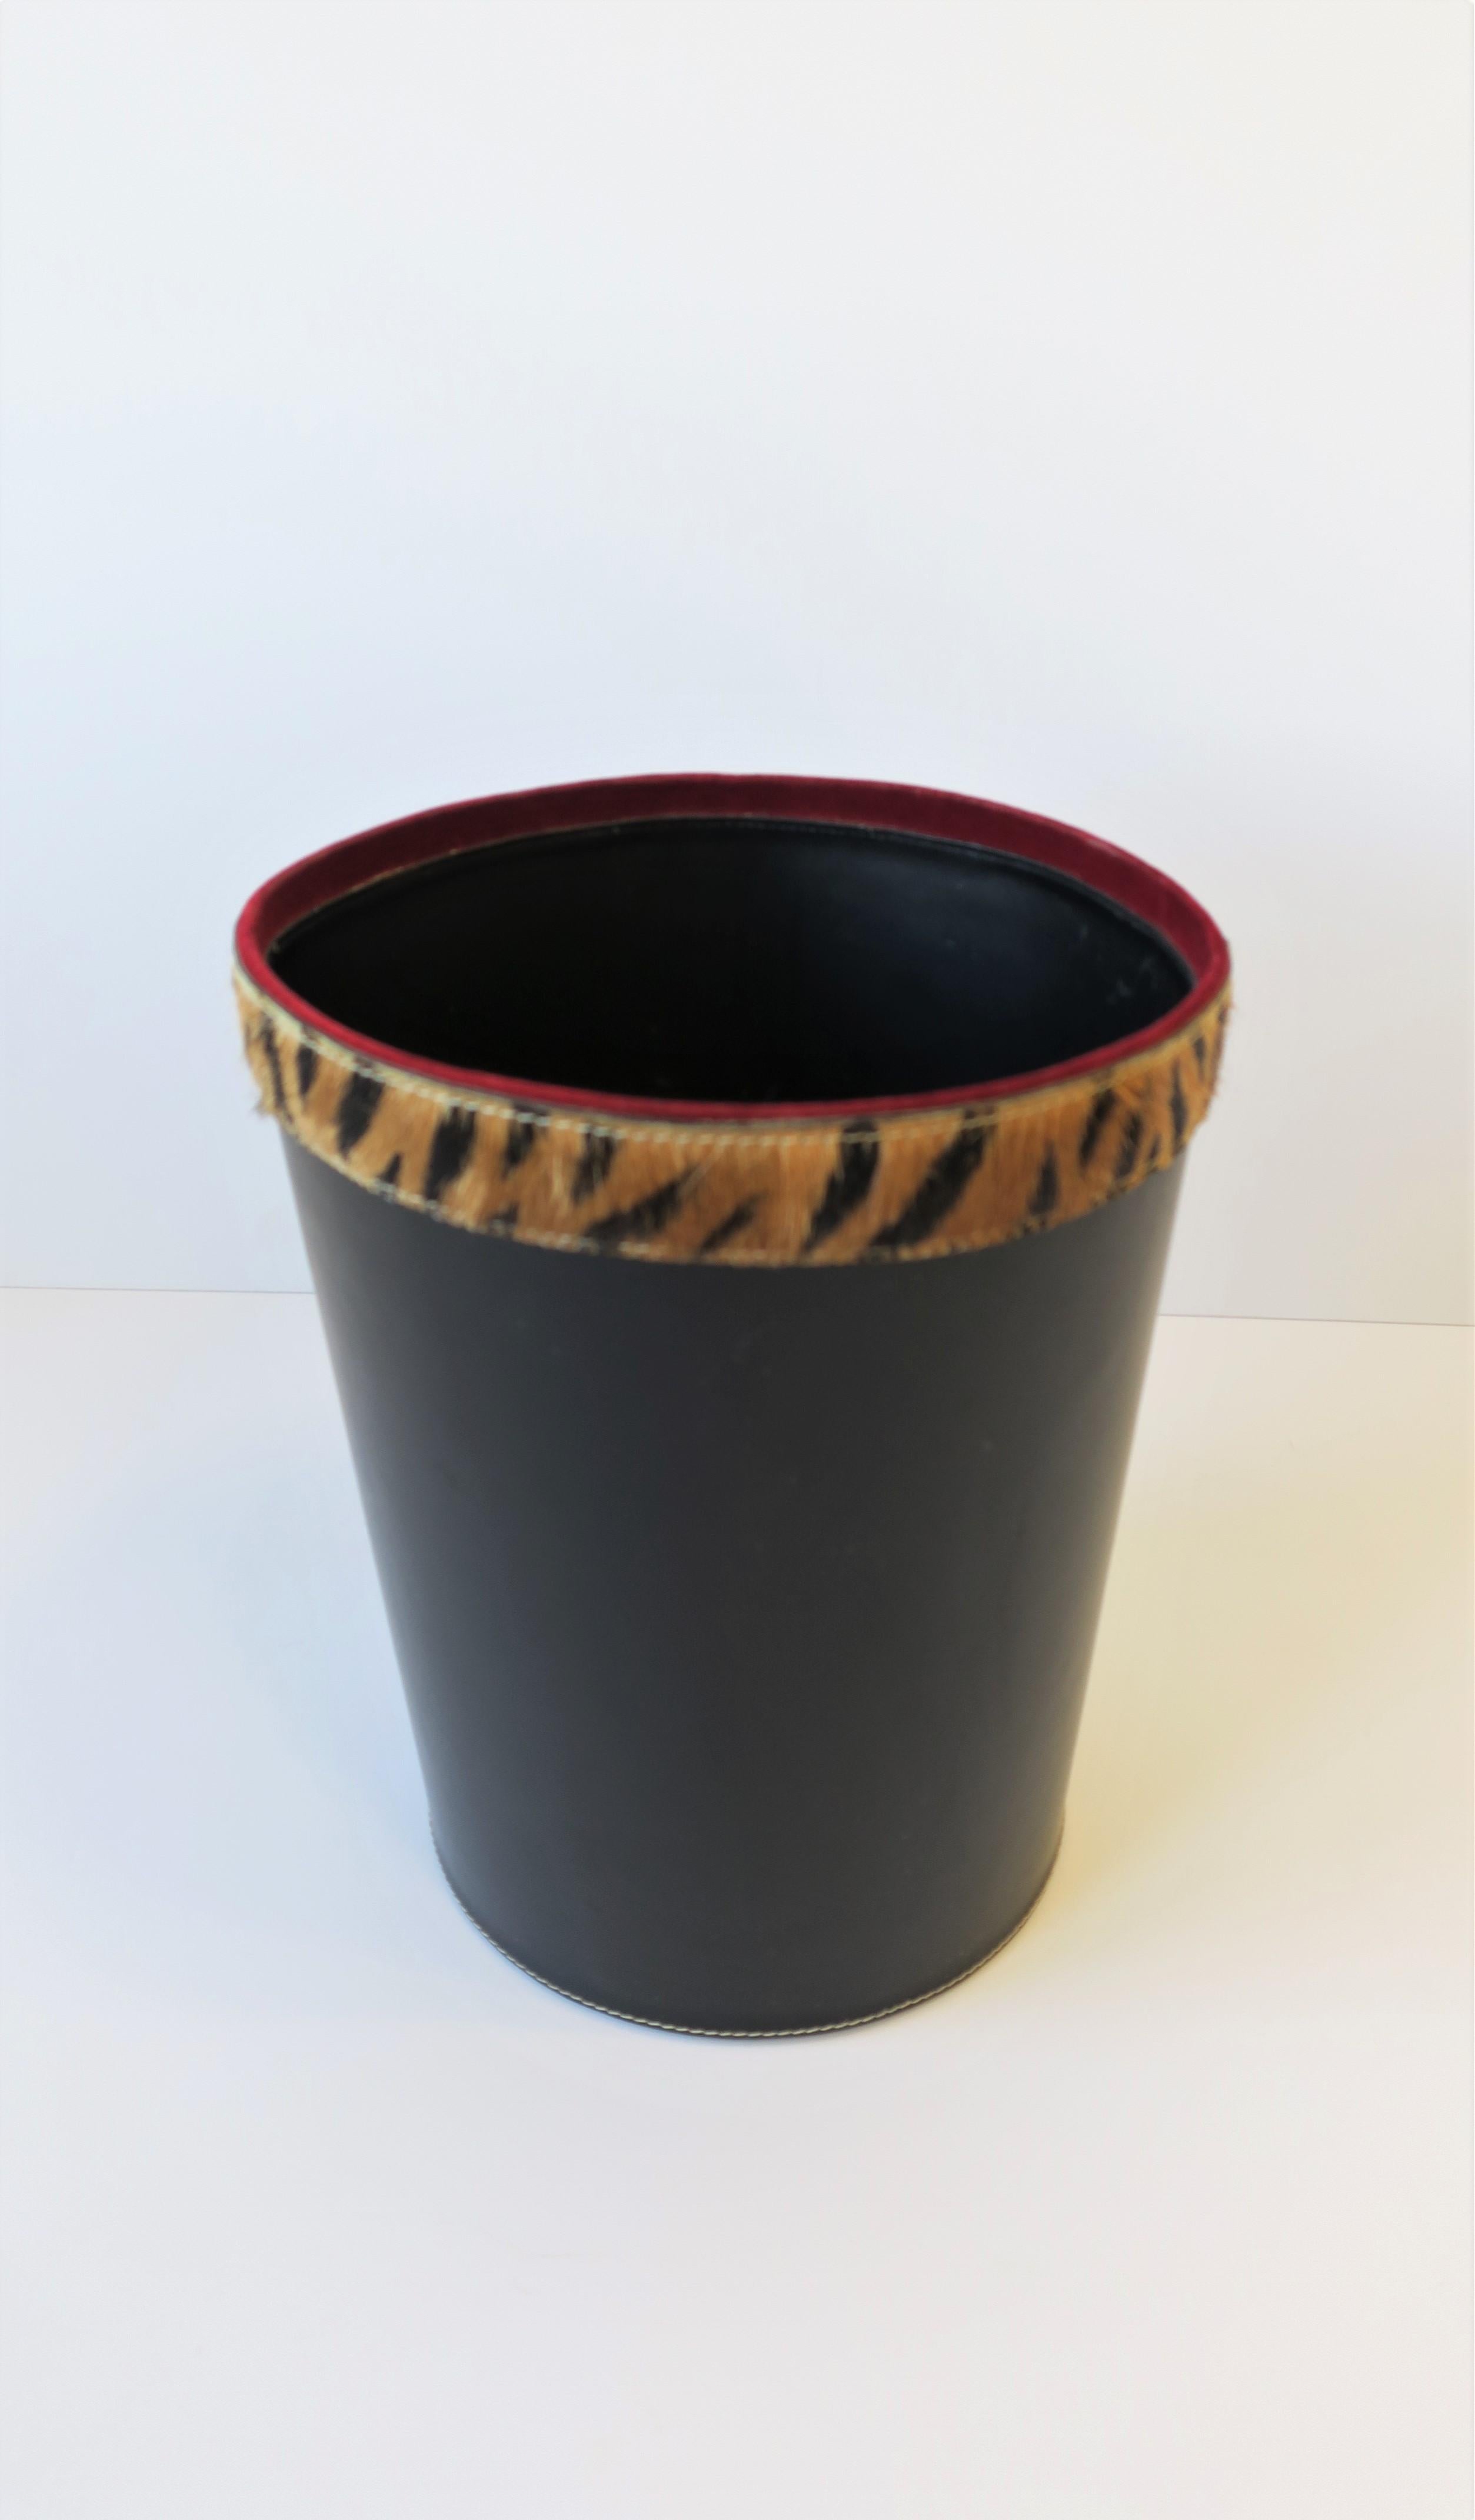 Art Deco Black Wastebasket or Trash Can with Tiger or Leopard Animal Hide Design